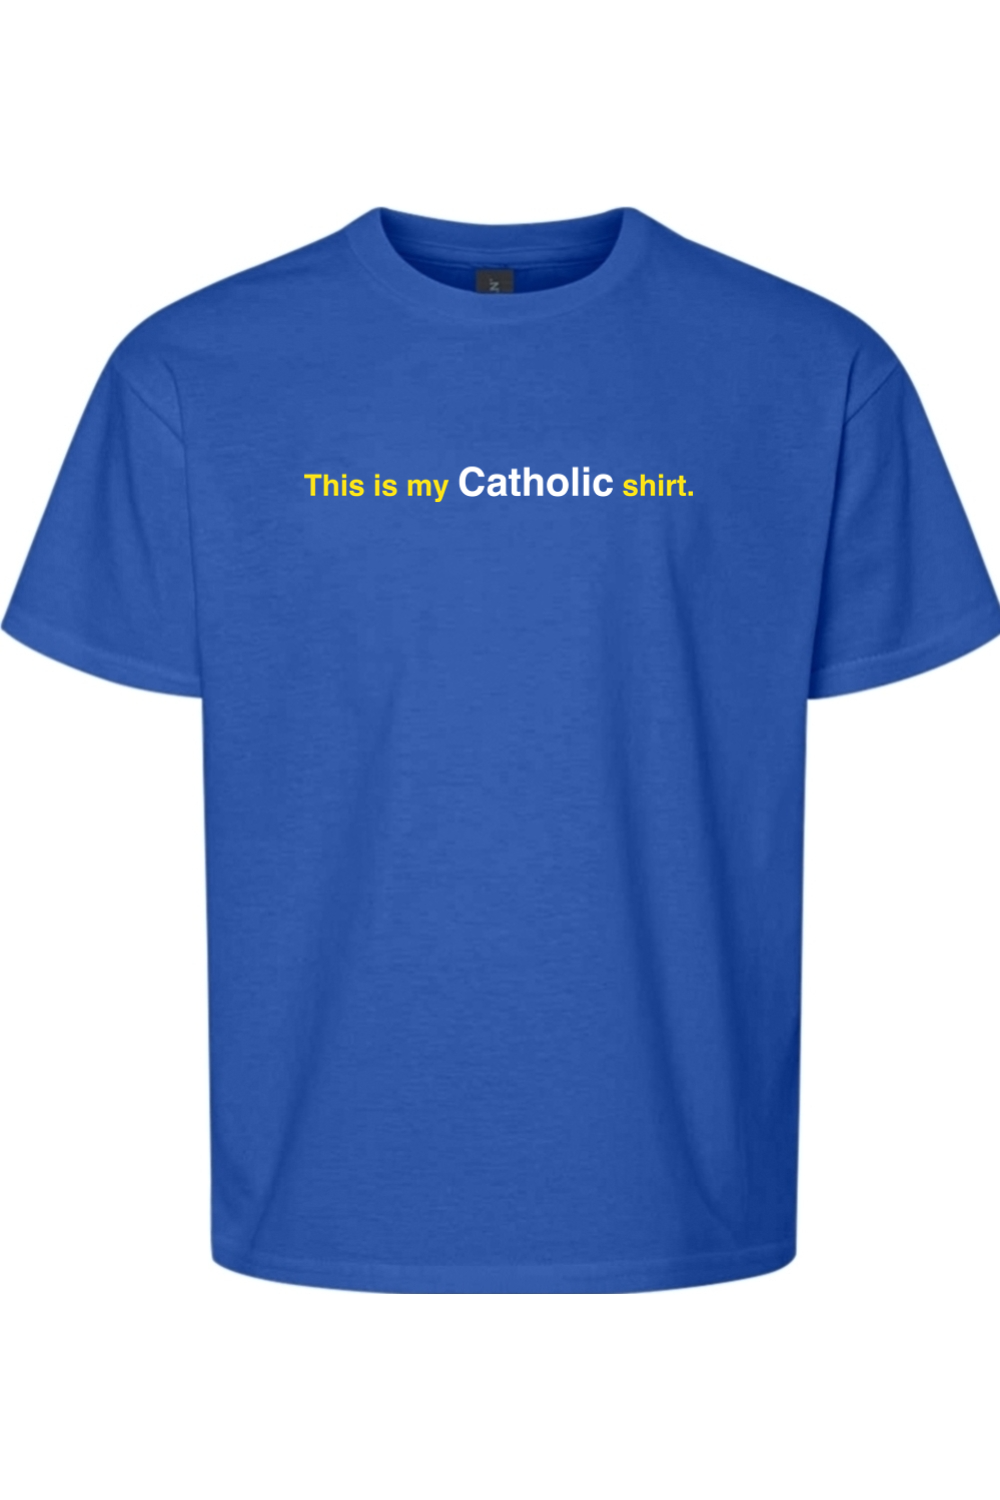 My Catholic Shirt – My Catholic Shirt Youth T-Shirt